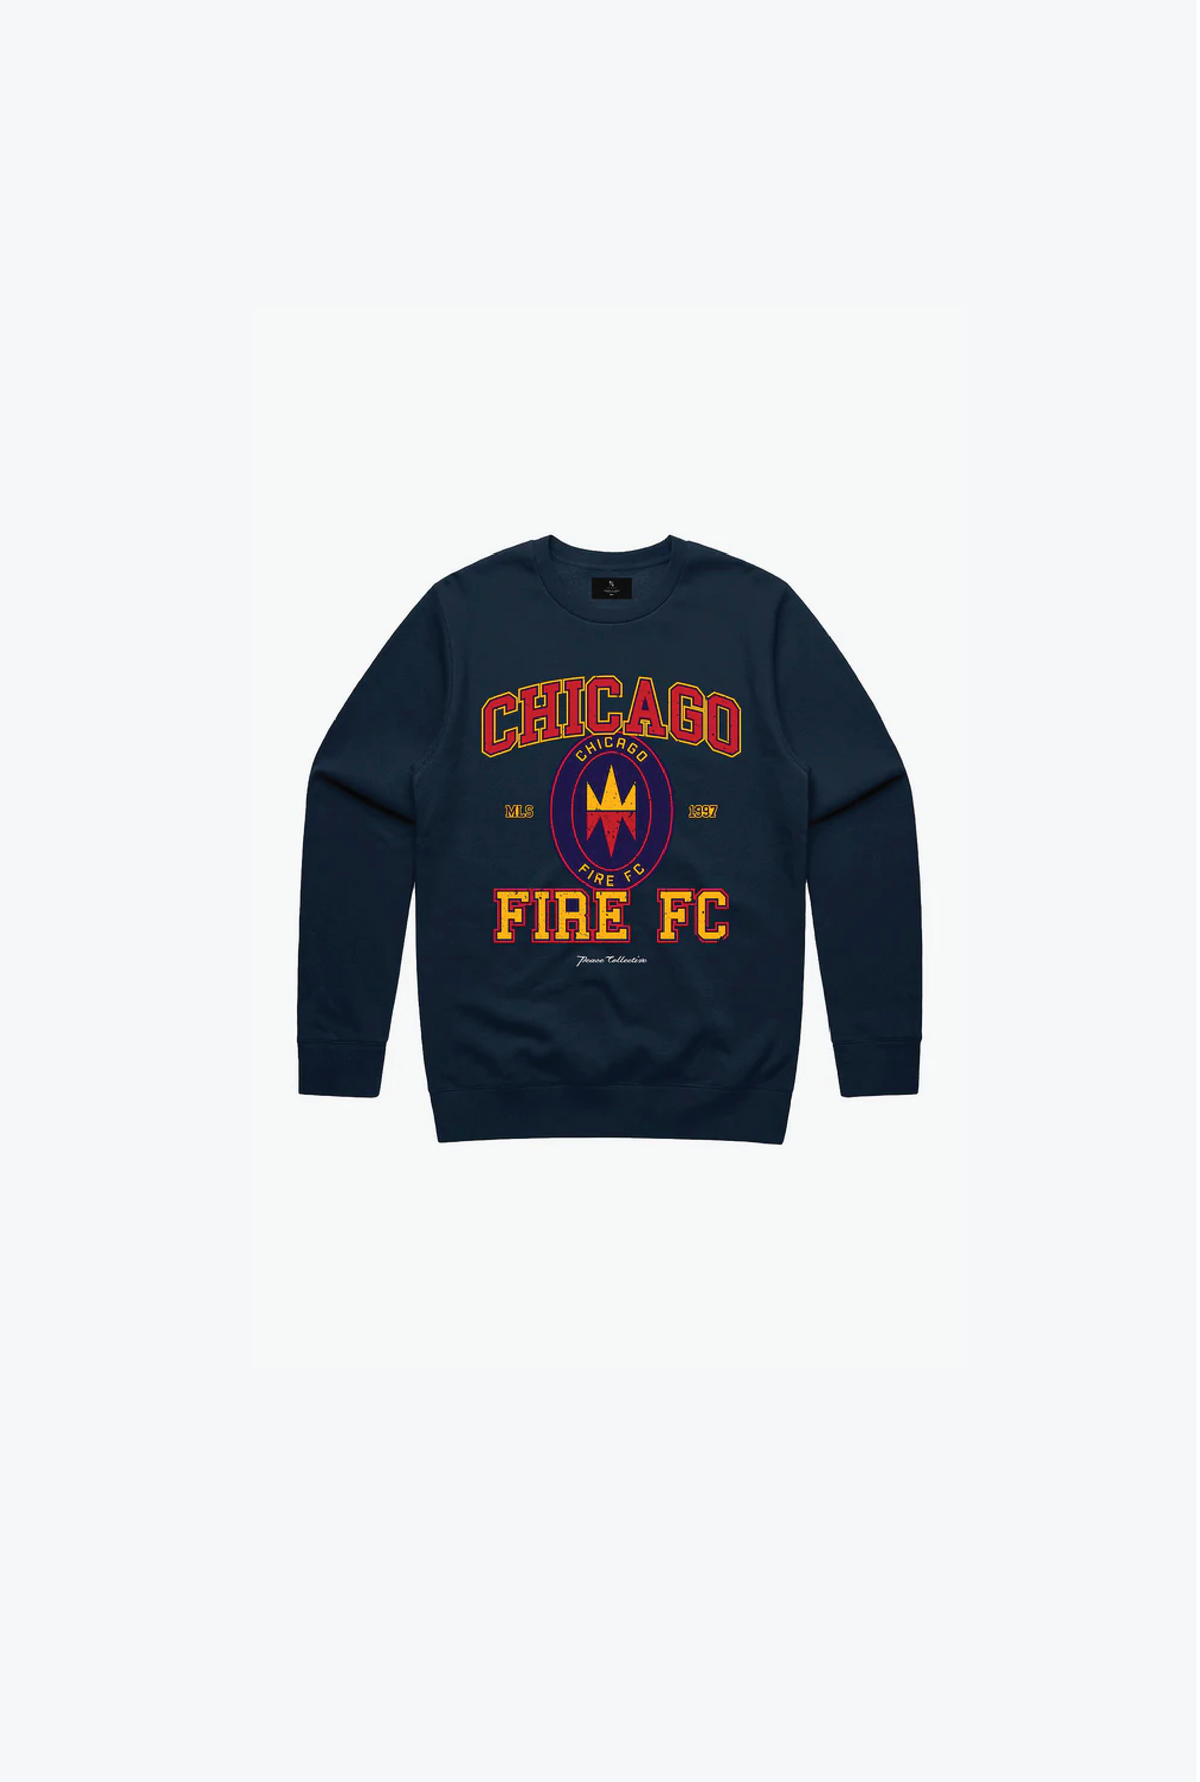 Chicago Fire FC Vintage Washed Kids Crewneck - Navy